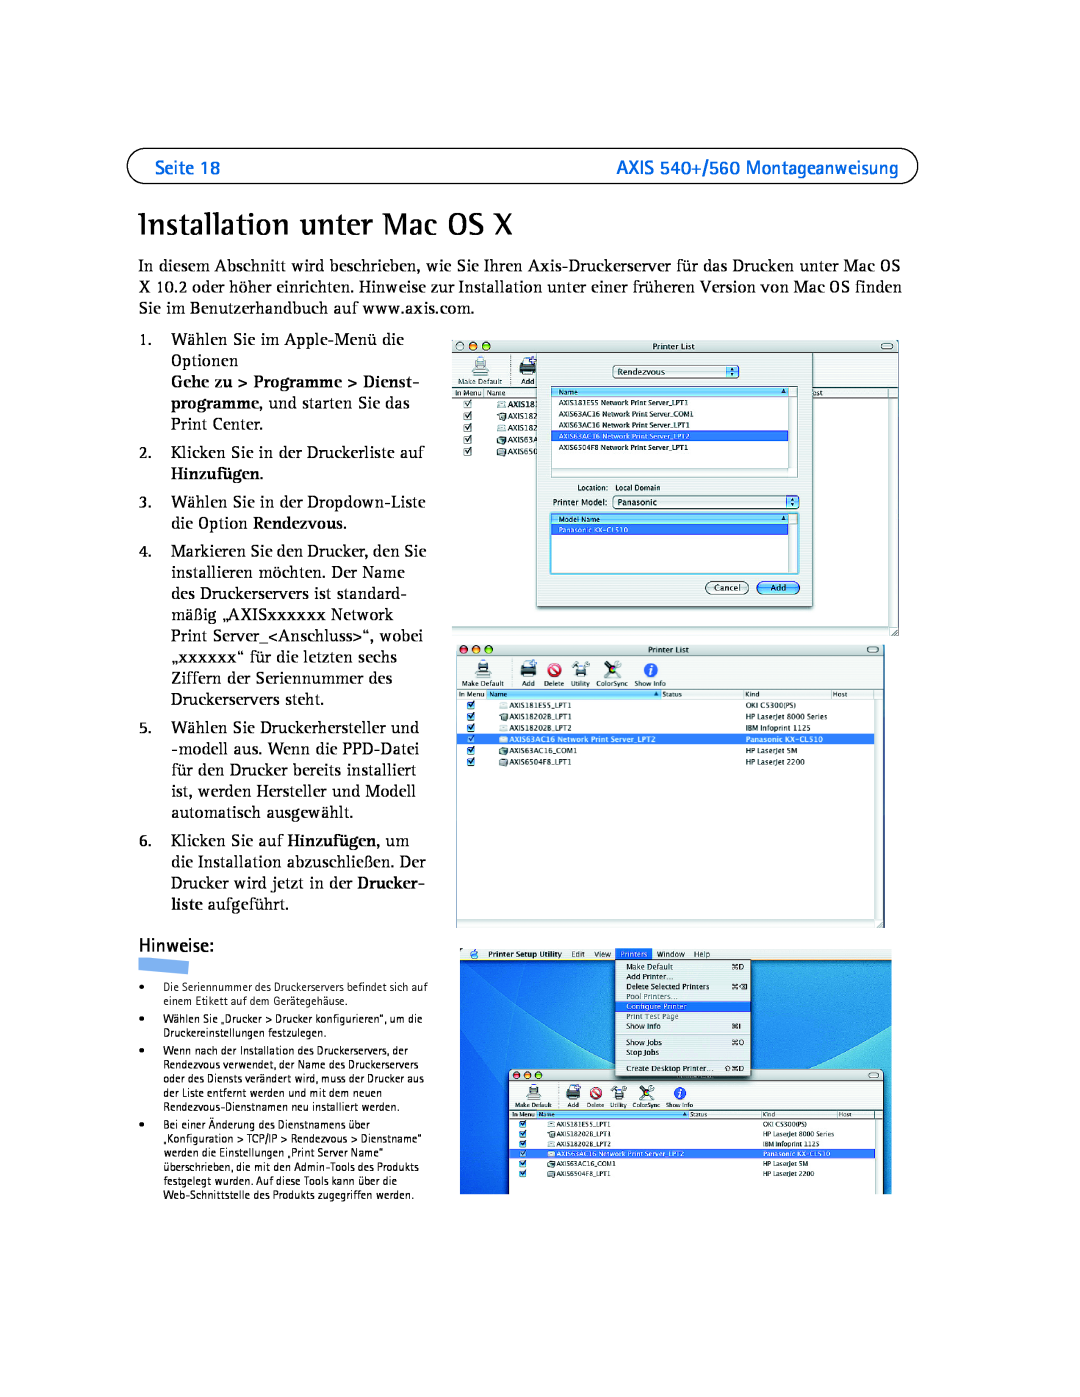 Axis Communications 540+, 560 manual Installation unter Mac OS, Seite, Hinweise, 1. Wählen Sie im Apple-Menü die Optionen 